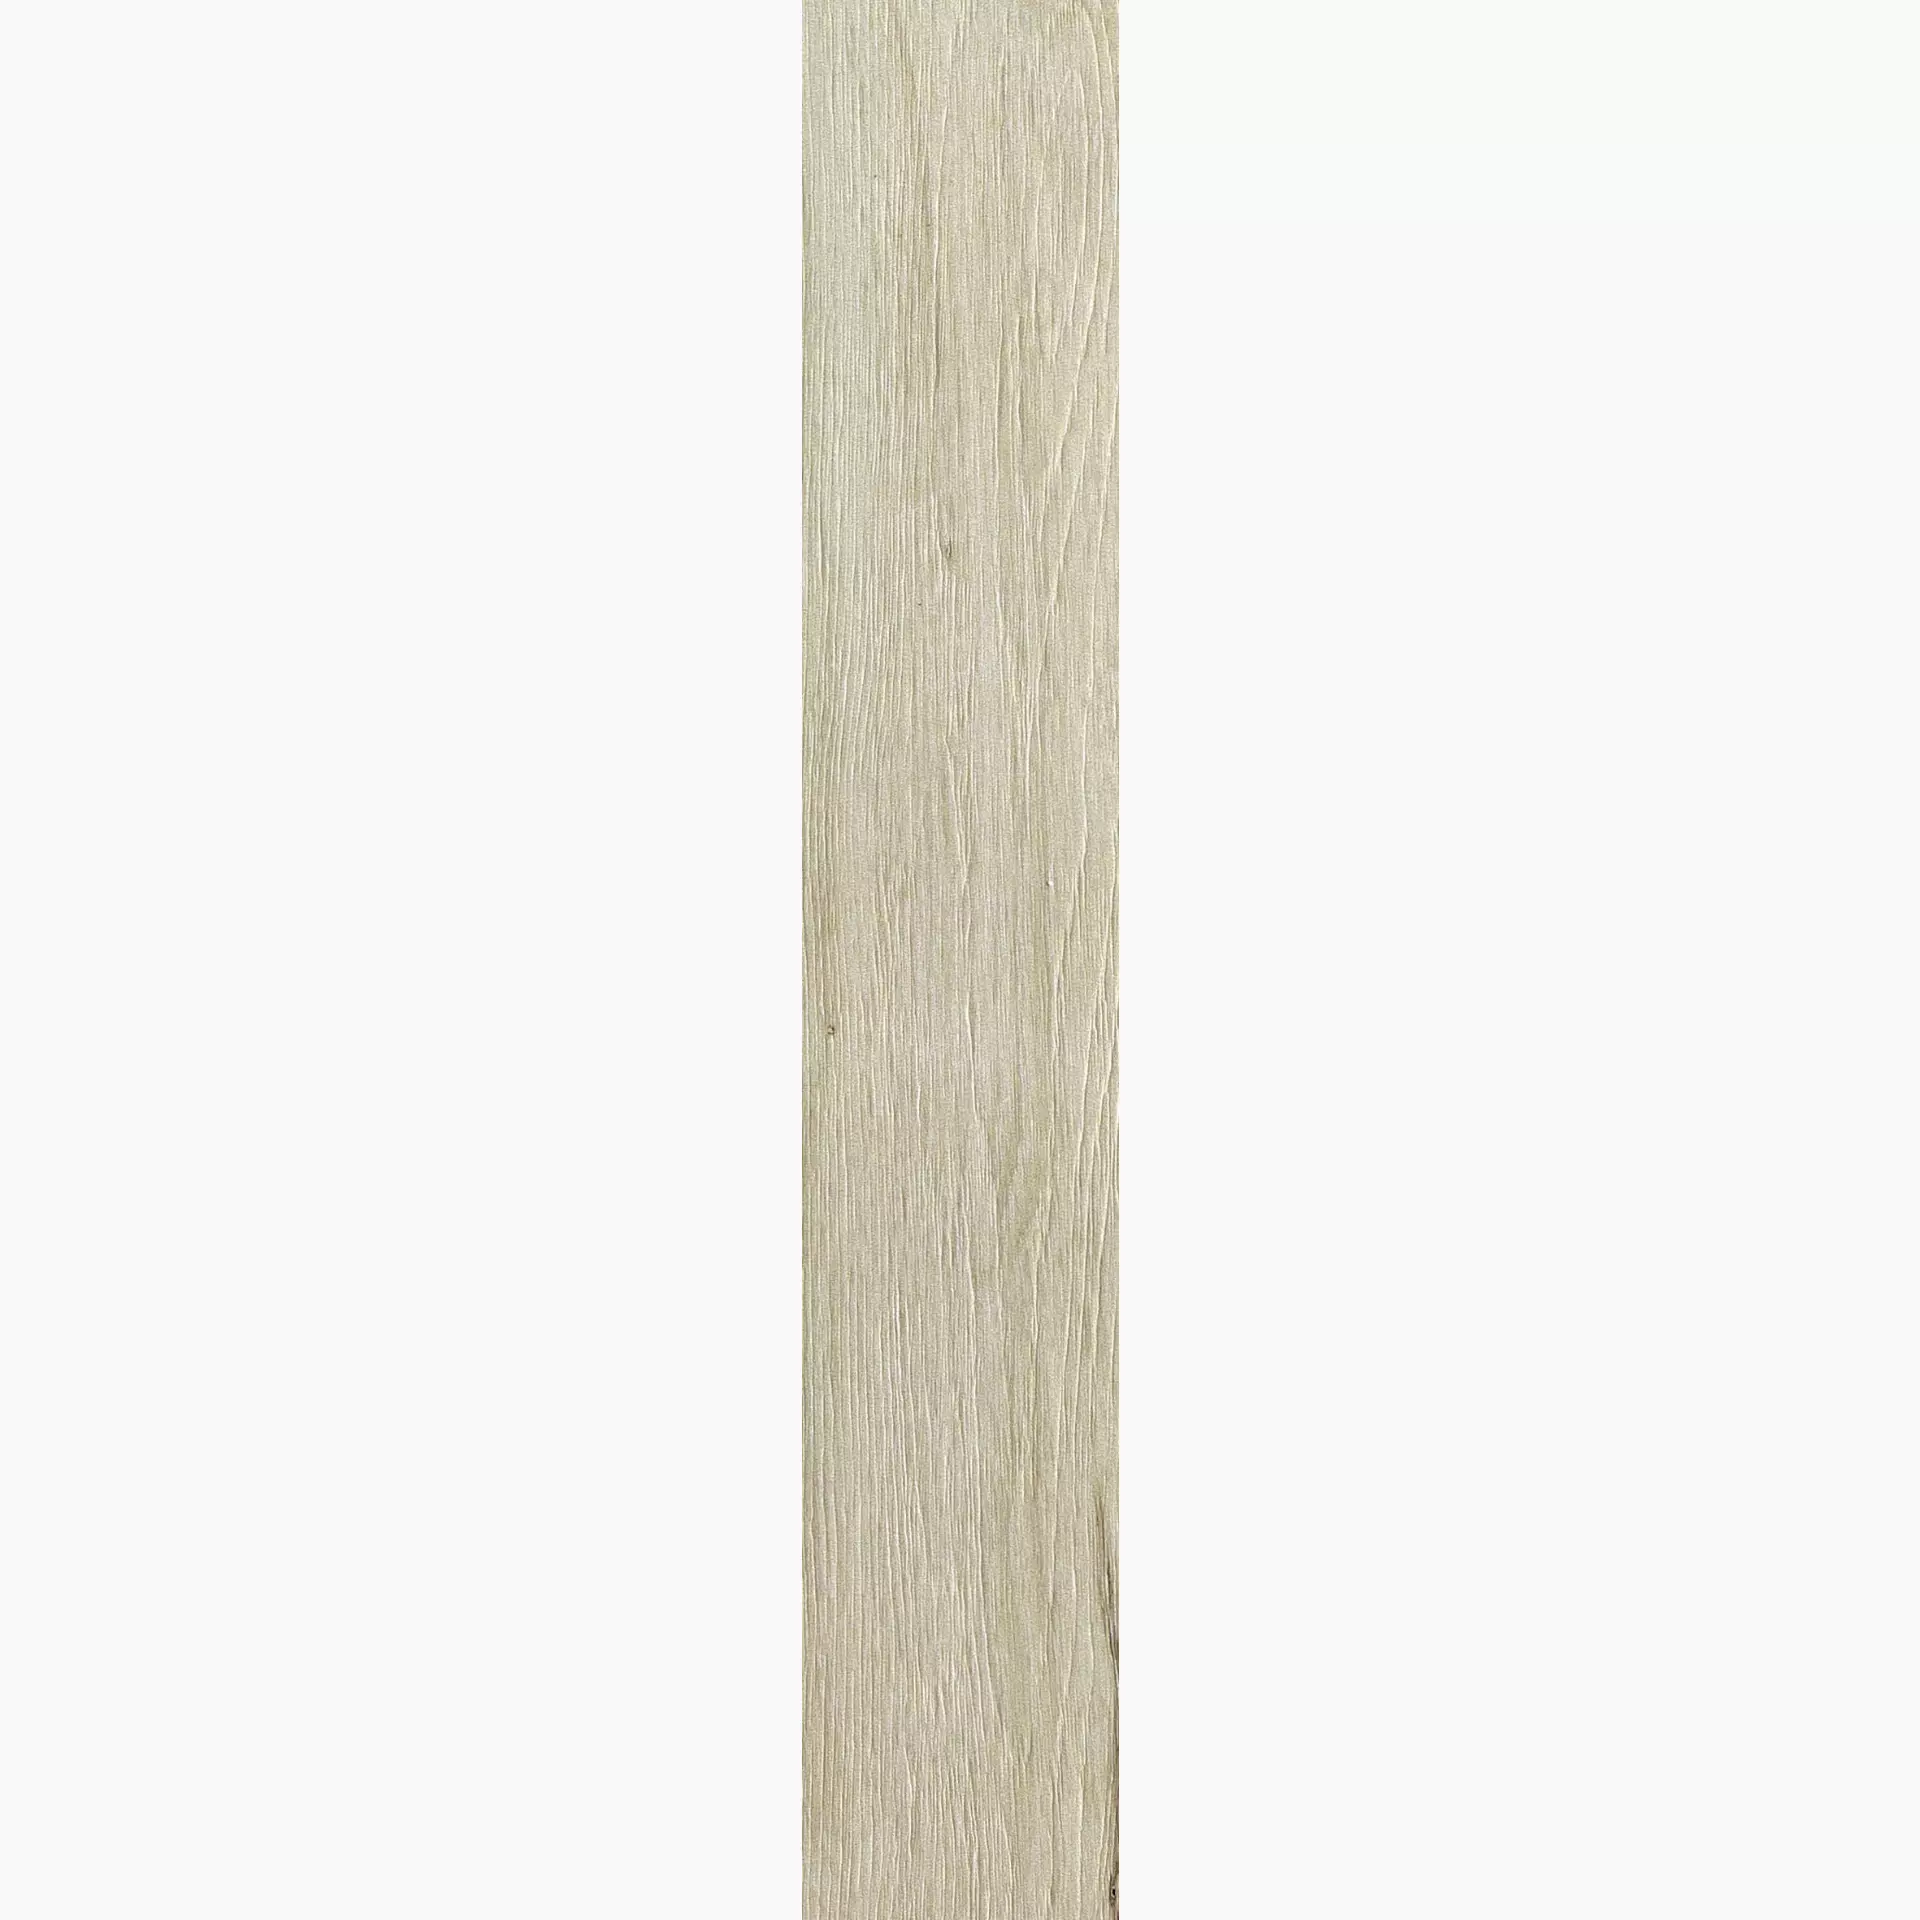 Florim Planches De Rex Amande Naturale – Matt 755608 20x120cm rectified 9mm